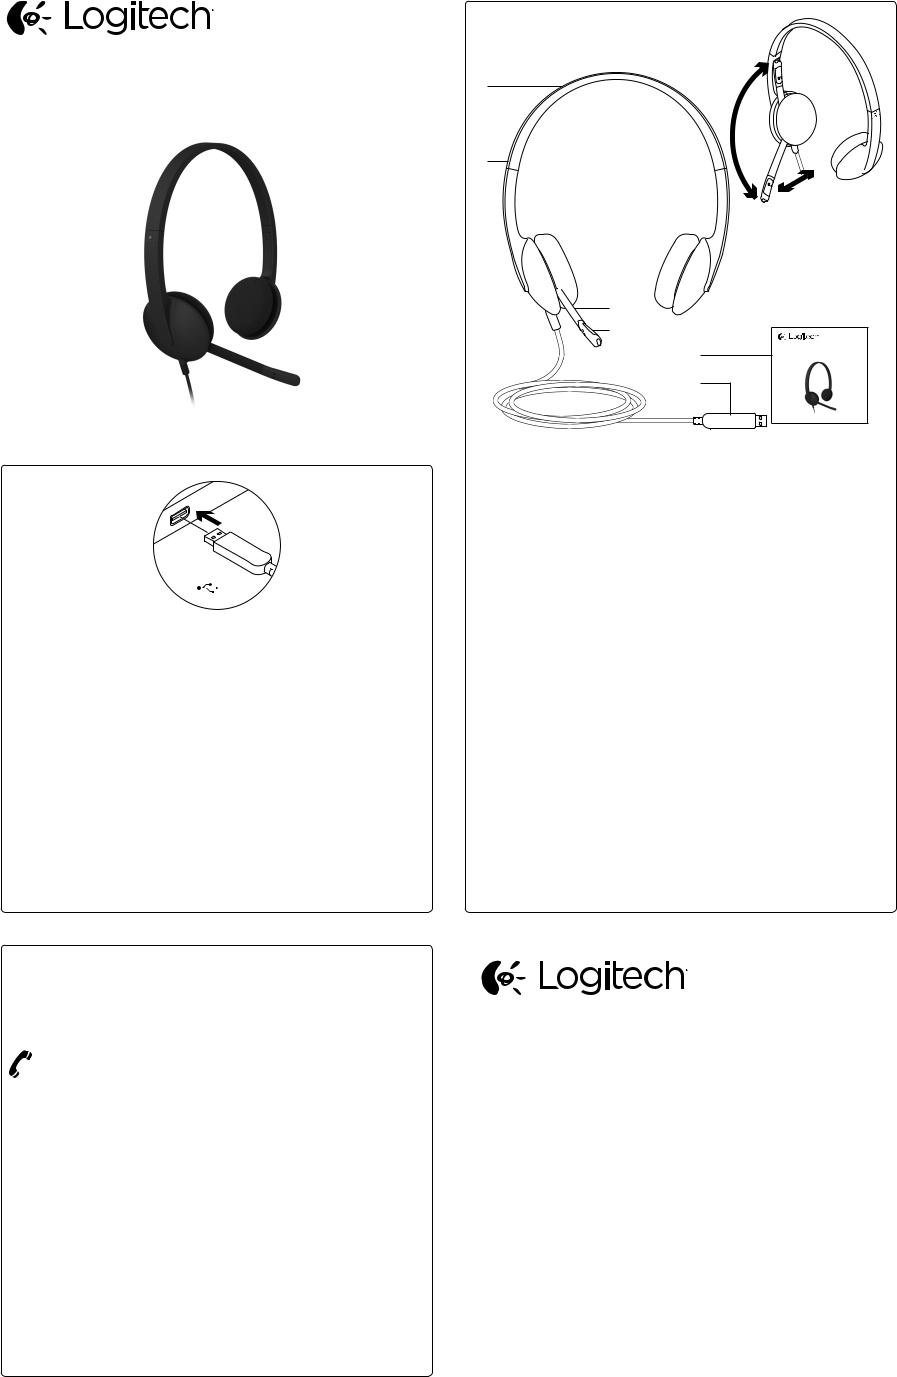 Logitech A-00044 Quick Start Manual